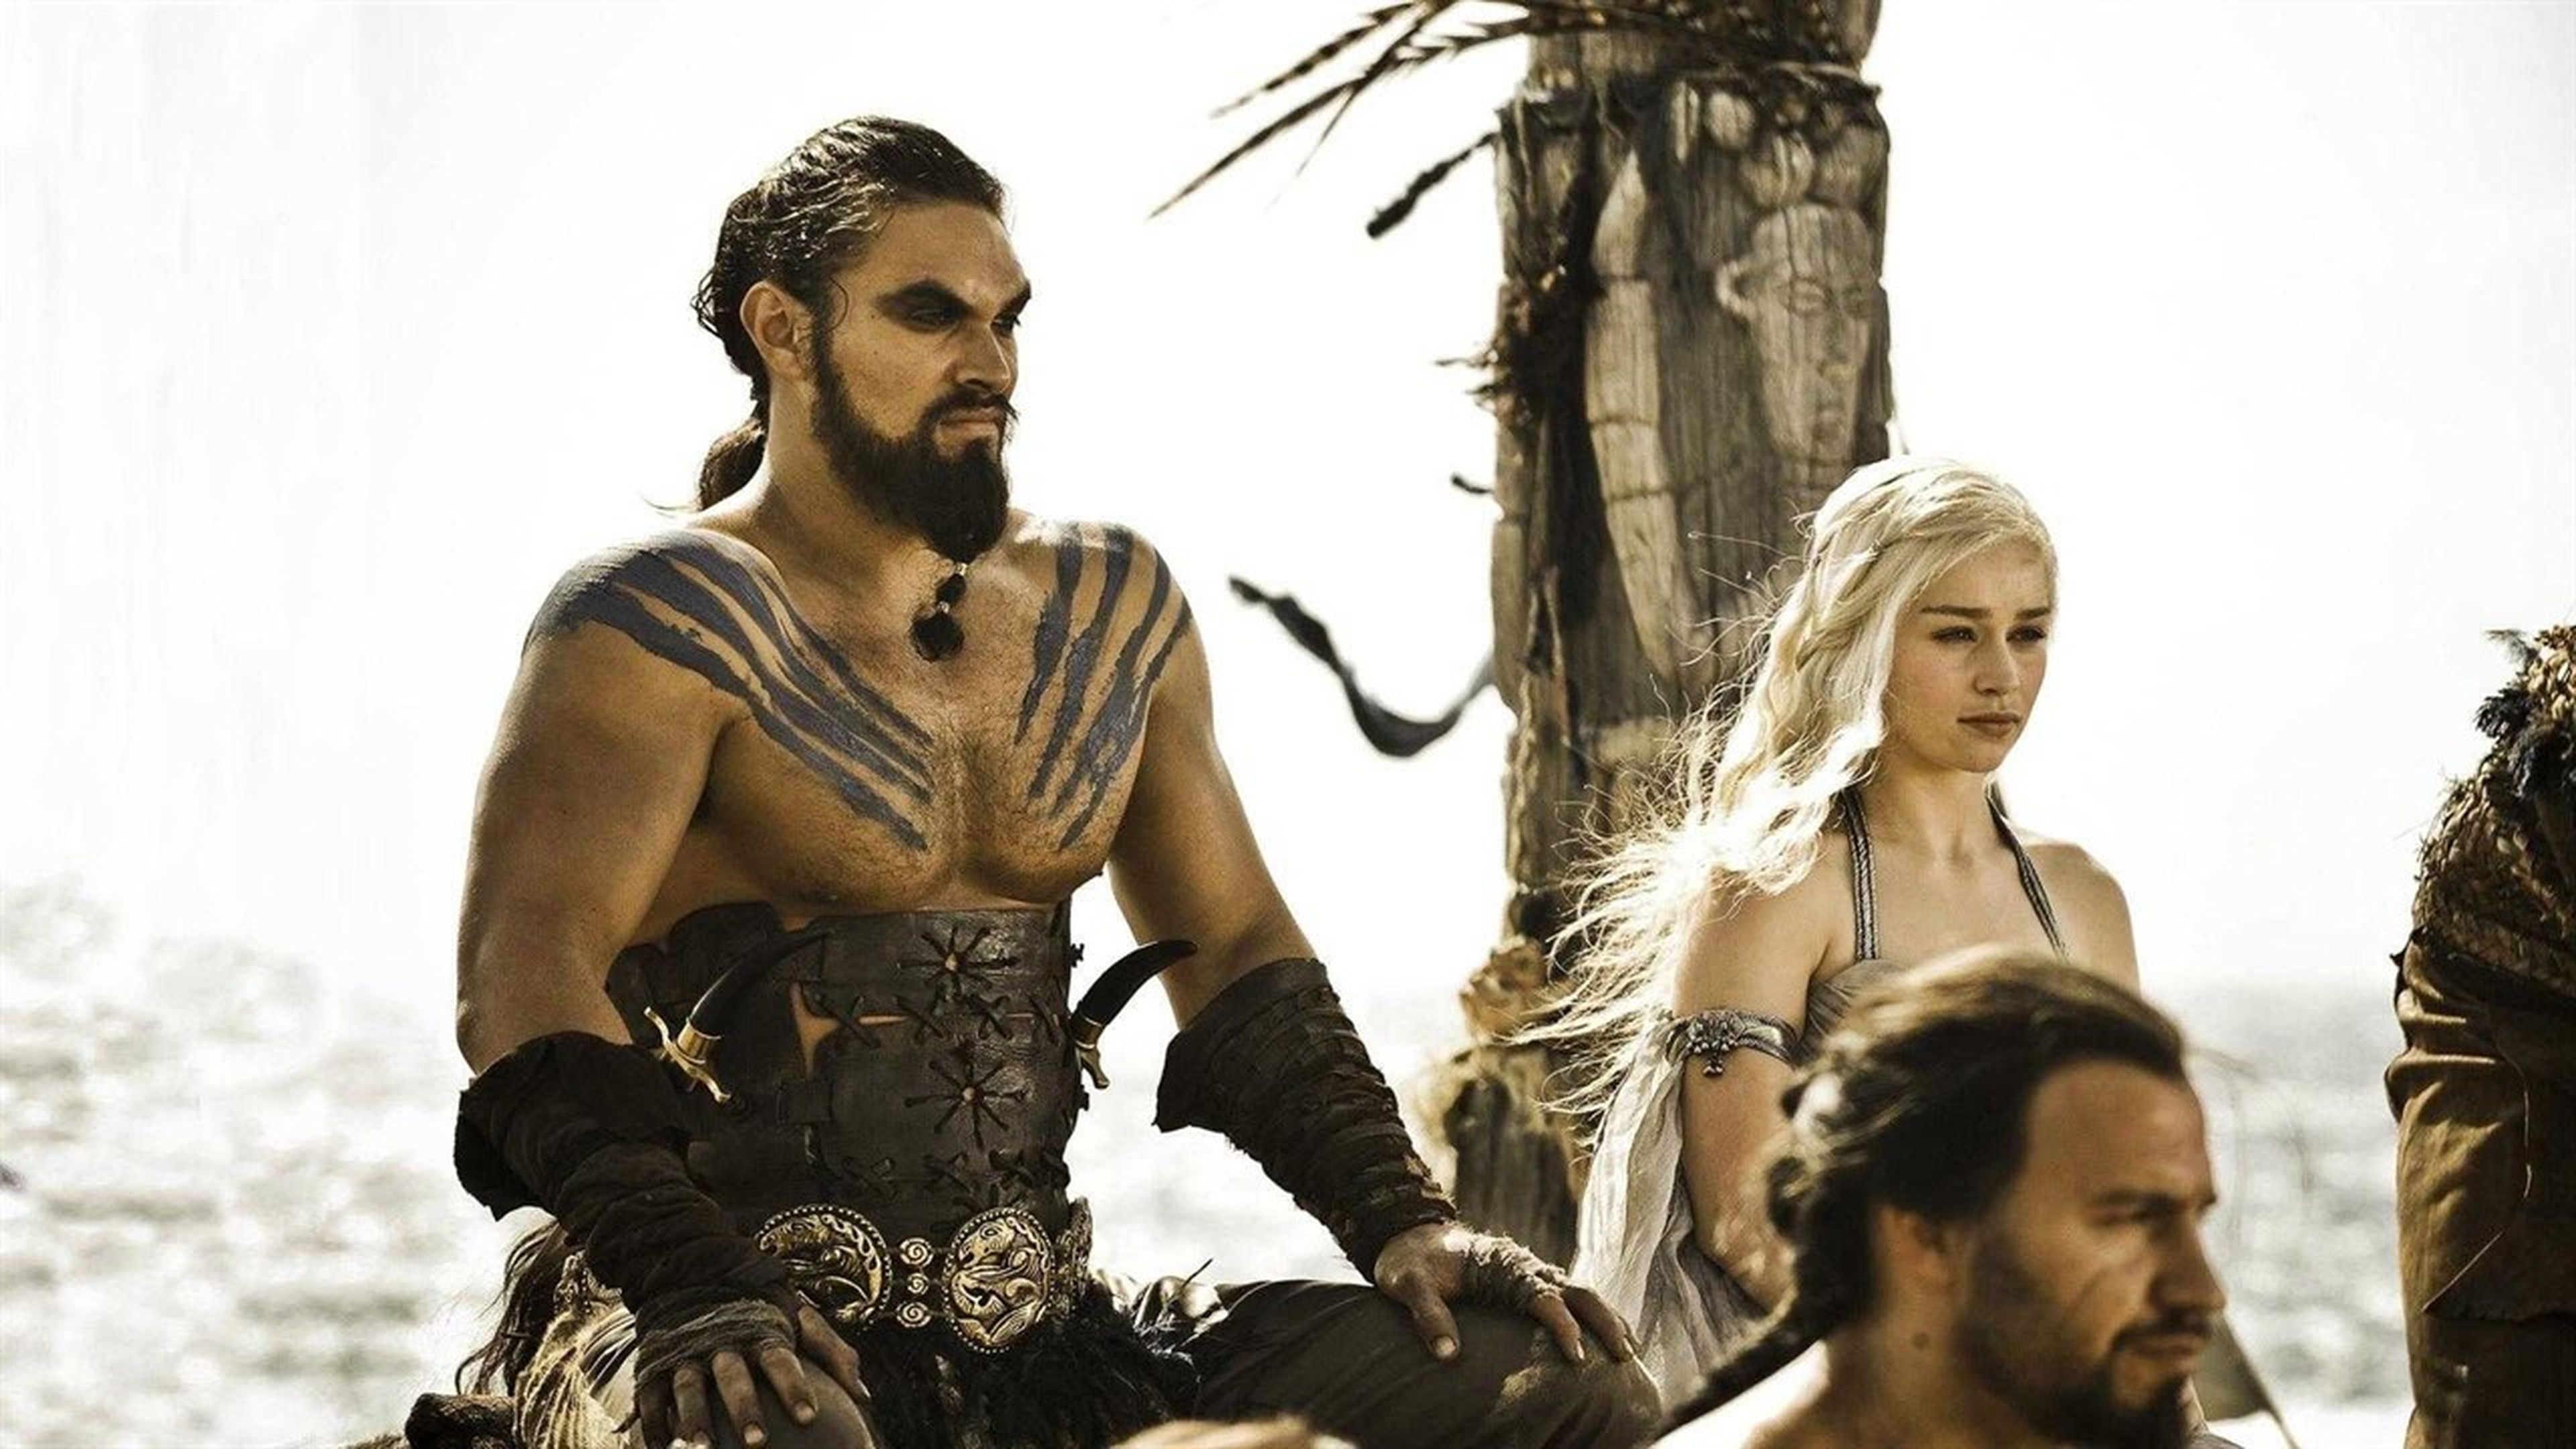 Khal Drogo lleva campanas en el pelo. Es una tradición de su pueblo que la HBO no ha respetado.